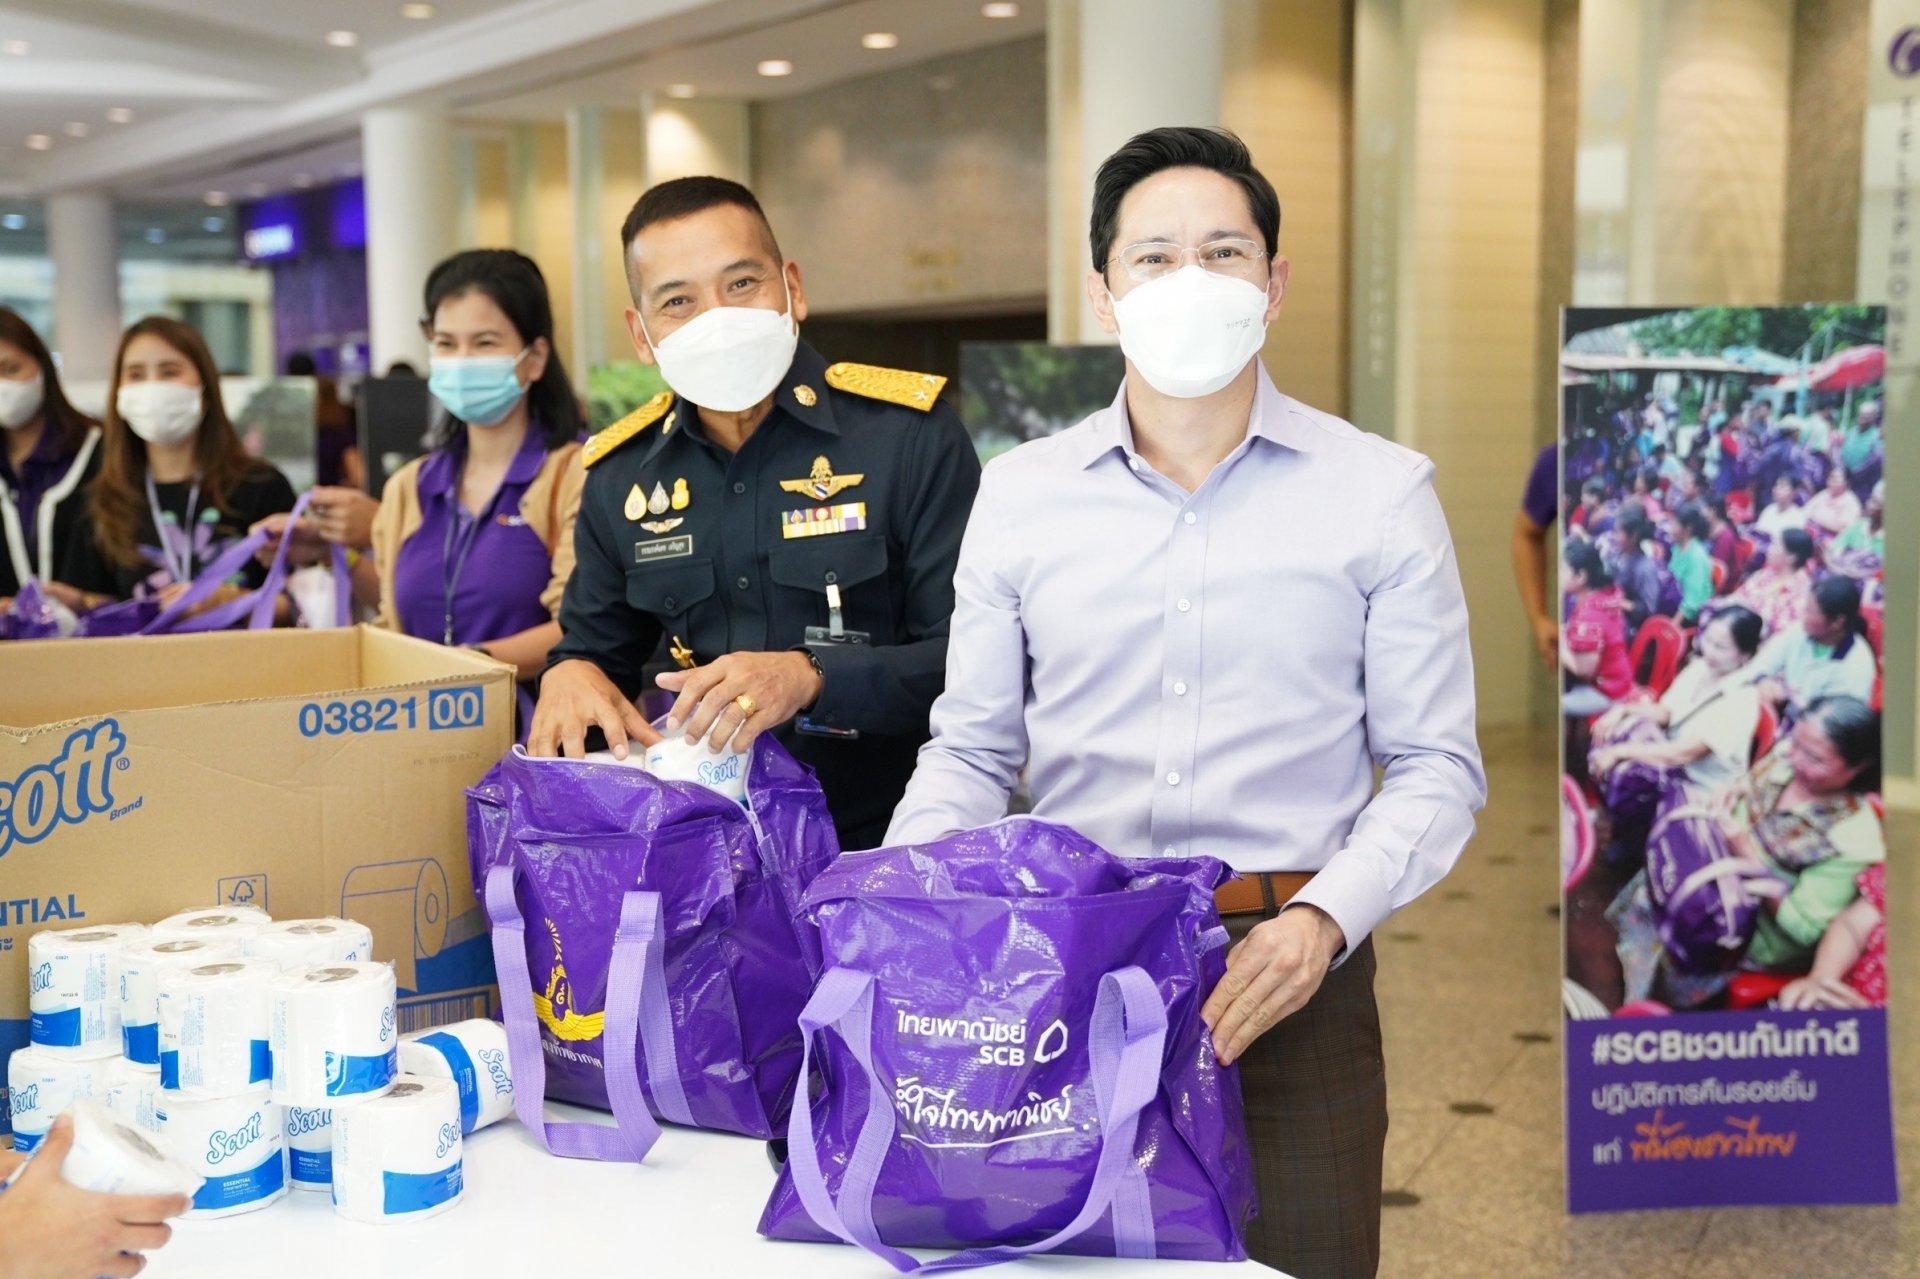 ธนาคารไทยพาณิชย์ พร้อมบรรเทาทุกข์ผู้ประสบอุทกภัย ด้วย “น้ำใจไทยพาณิชย์”